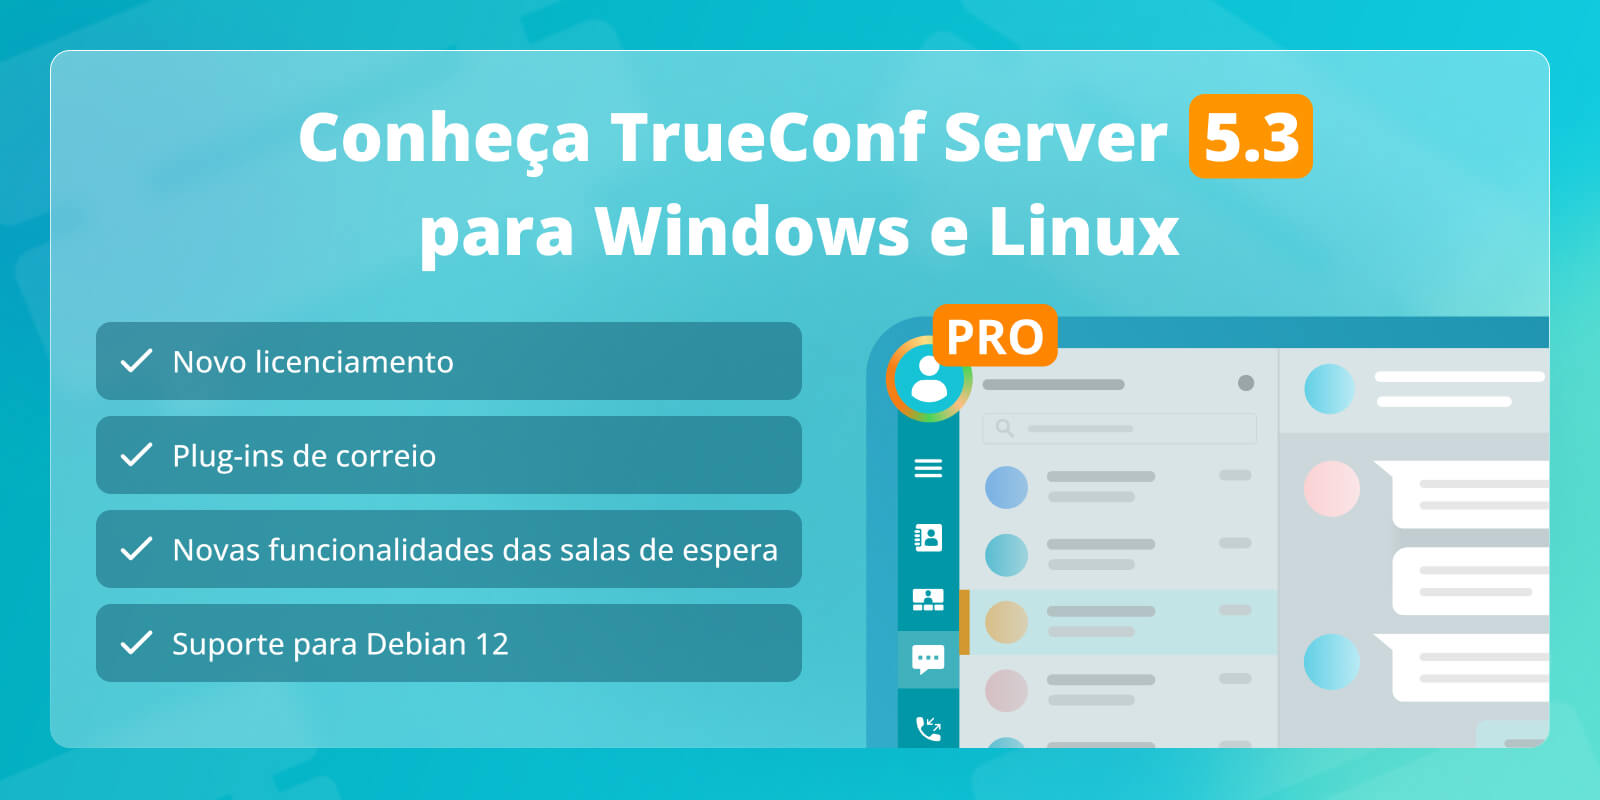 Atualização principal do TrueConf Server 5.3: novo licenciamento, plug-ins de e-mail e suporte para Debian 12 2